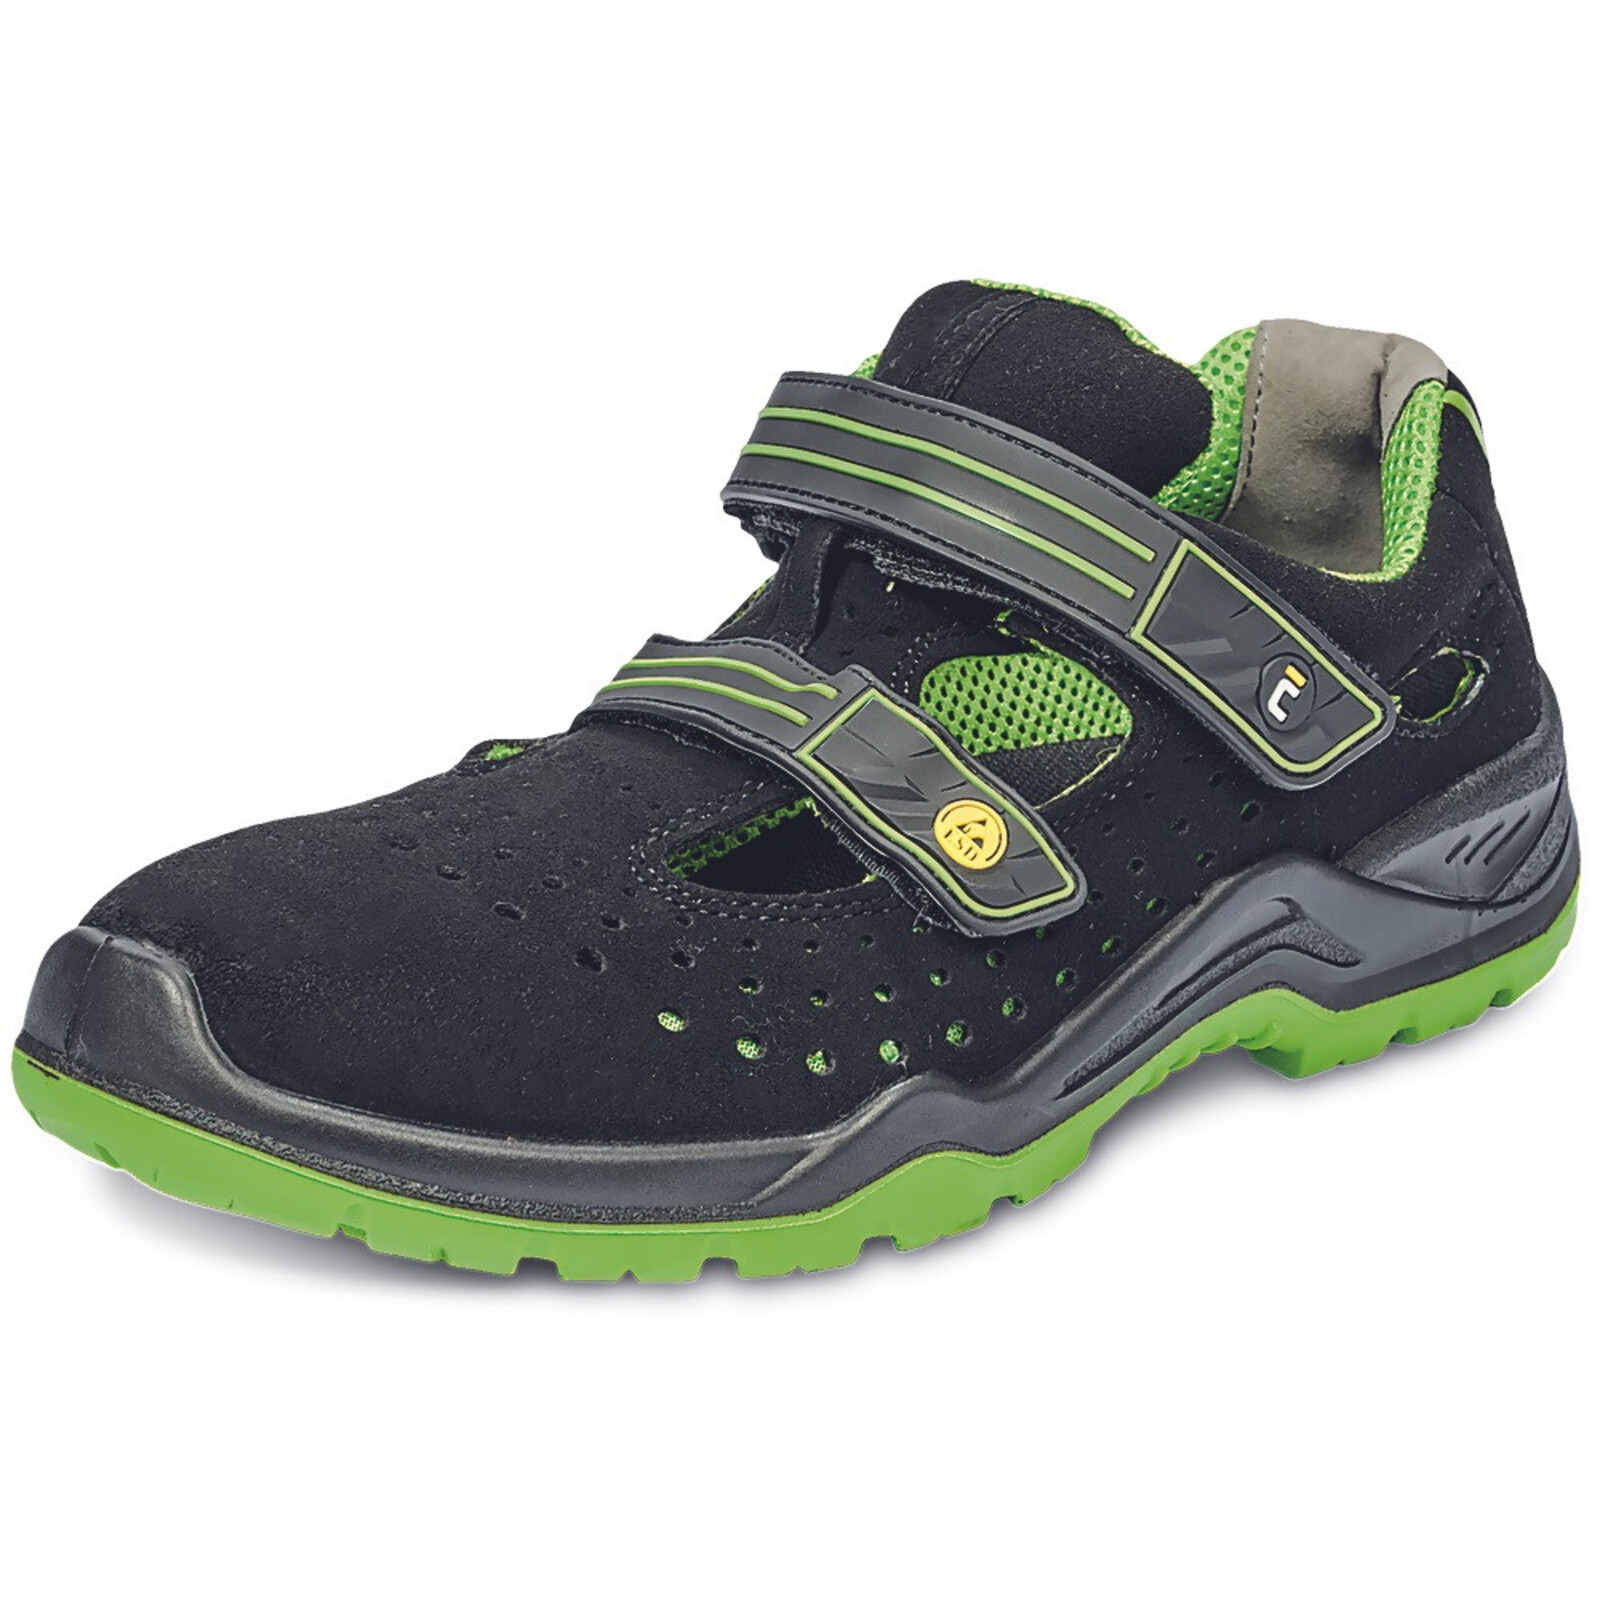 Bezpečnostné sandále Cerva Halwill MF ESD S1P SRC - veľkosť: 42, farba: čierna/zelená